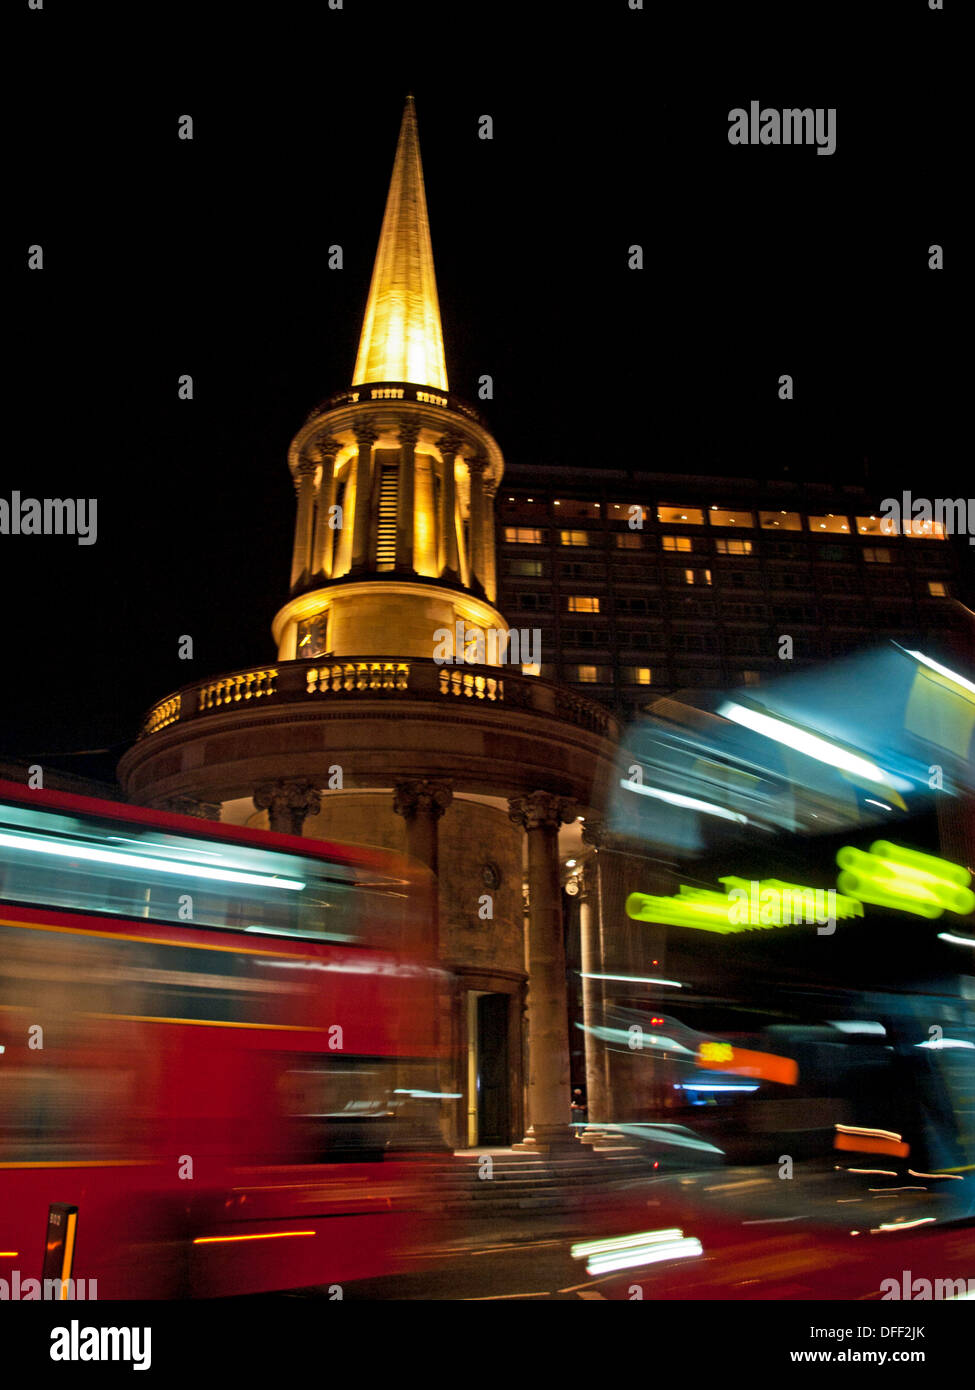 Gli autobus a due piani in transito che mostra tutte le anime Chiesa di notte, Langham Place, London, England, Regno Unito Foto Stock